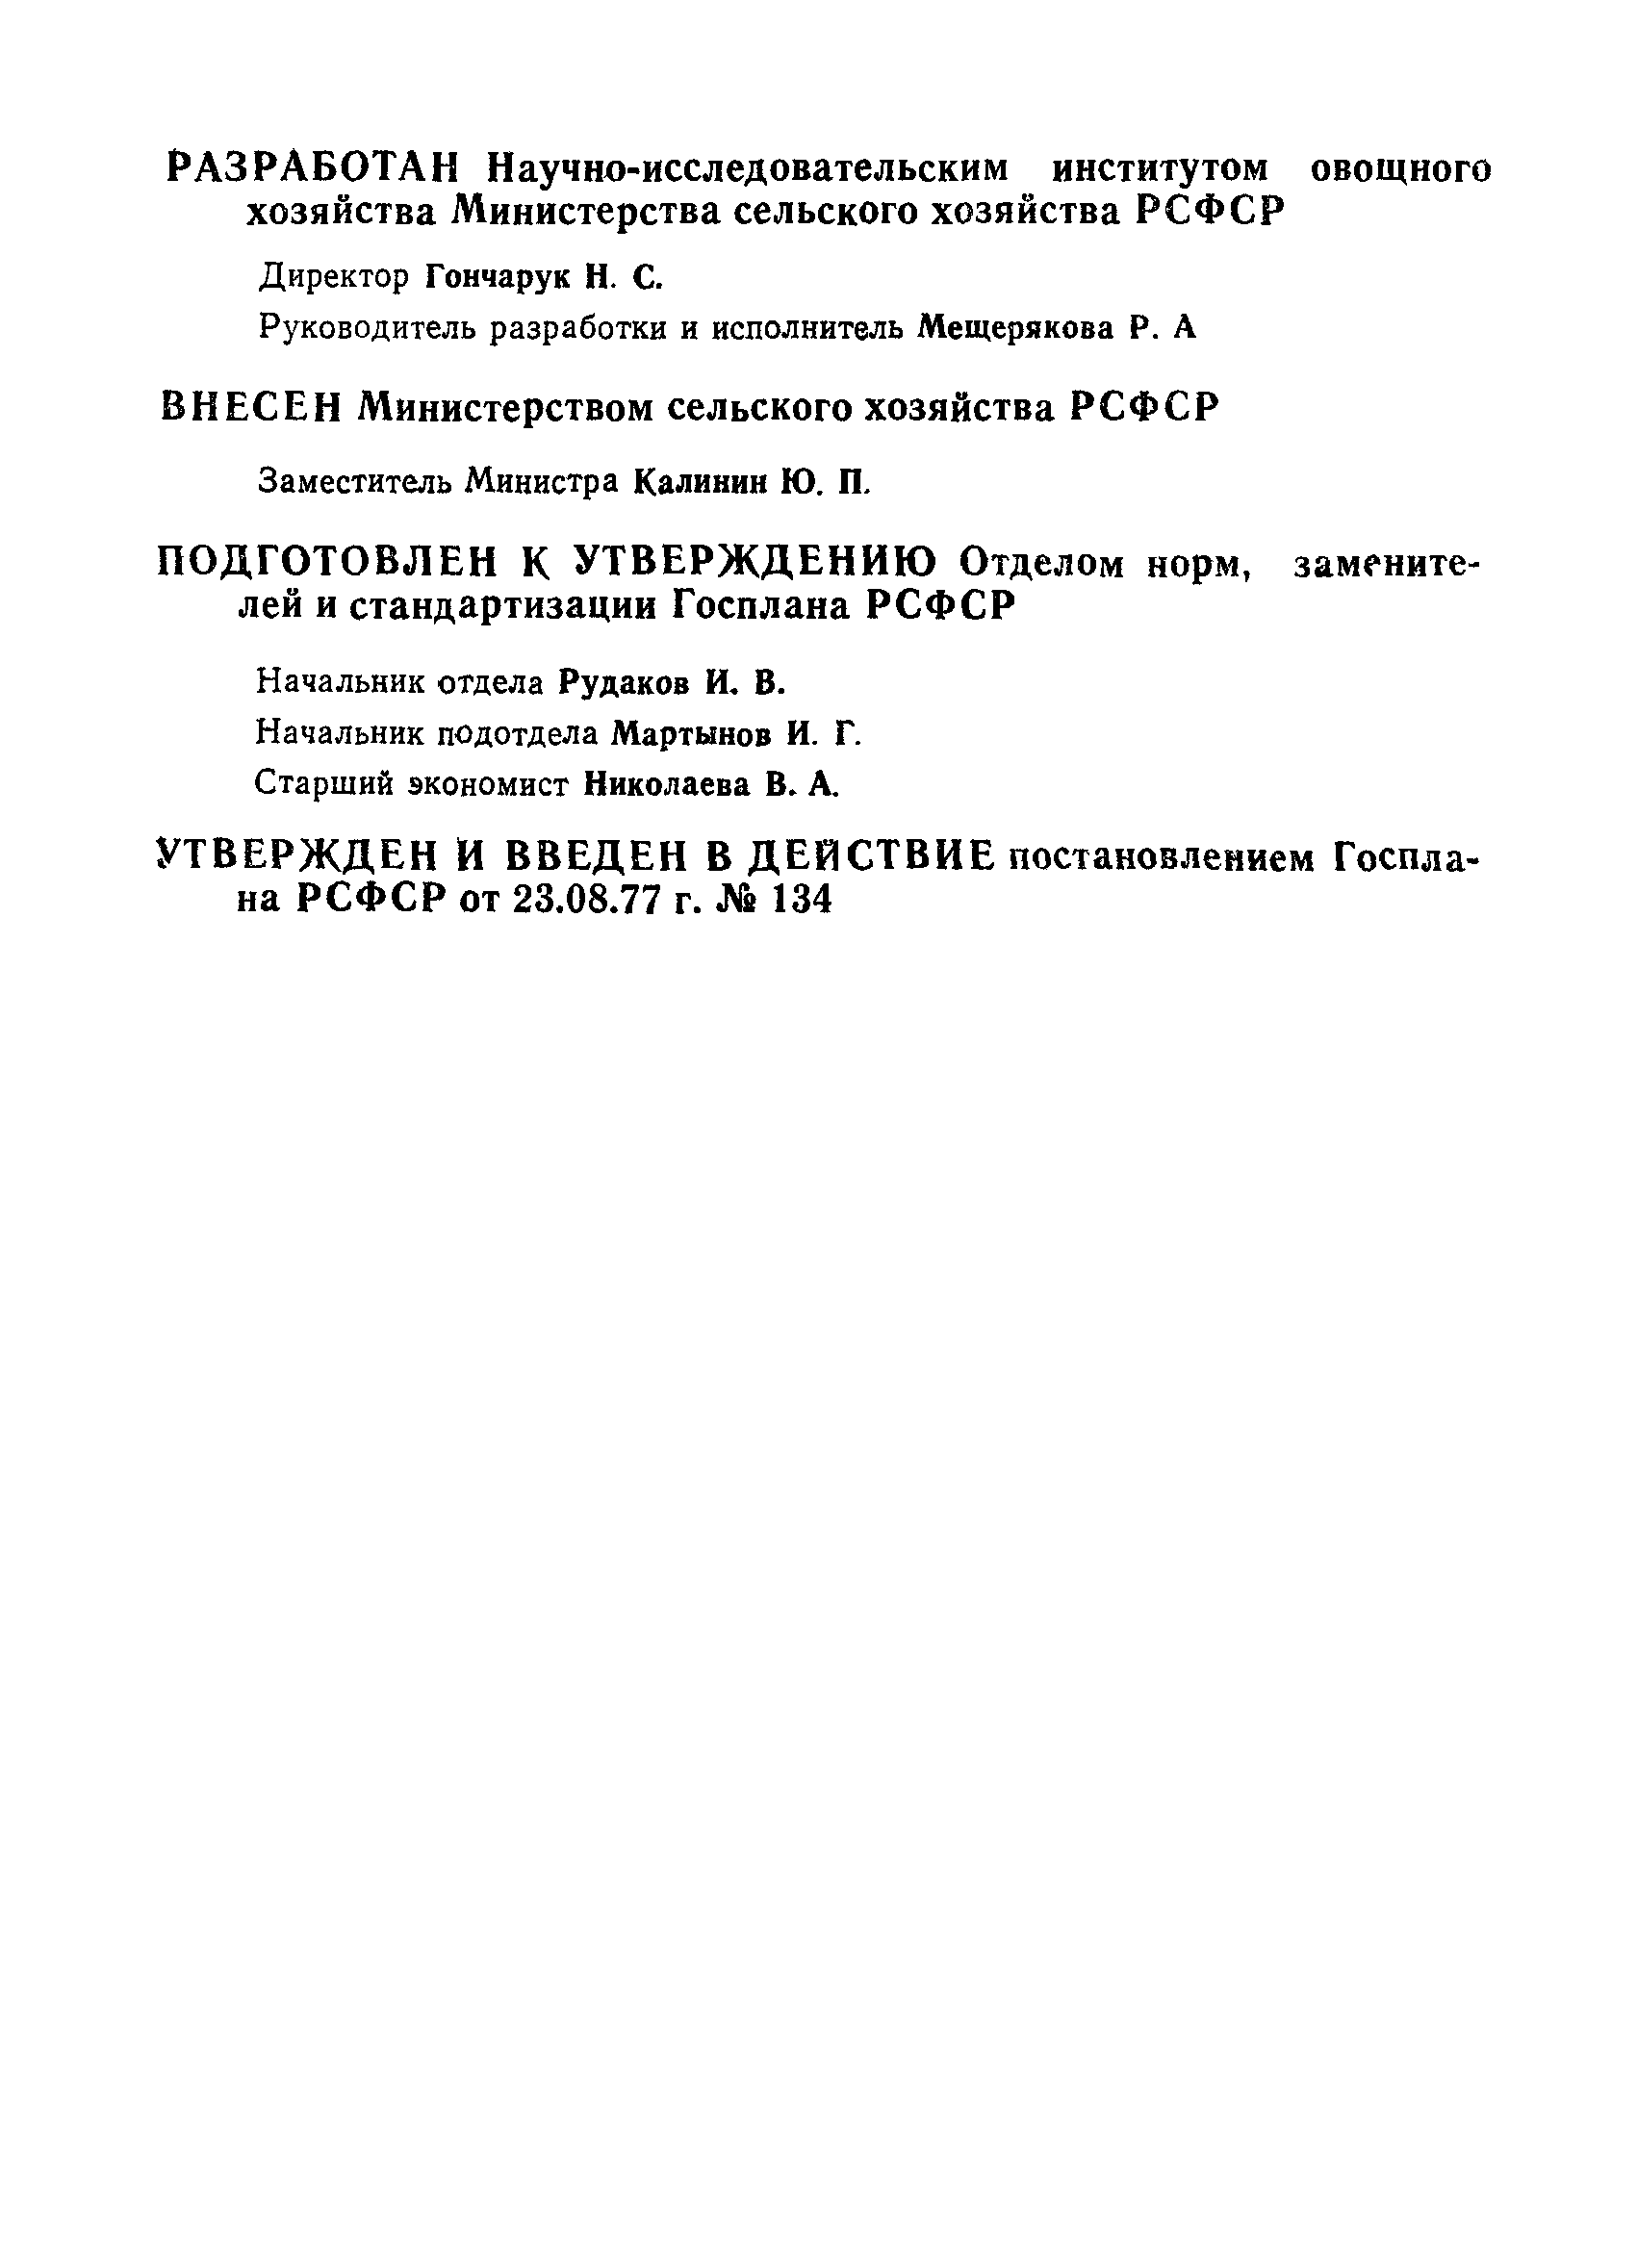 РСТ РСФСР 364-77